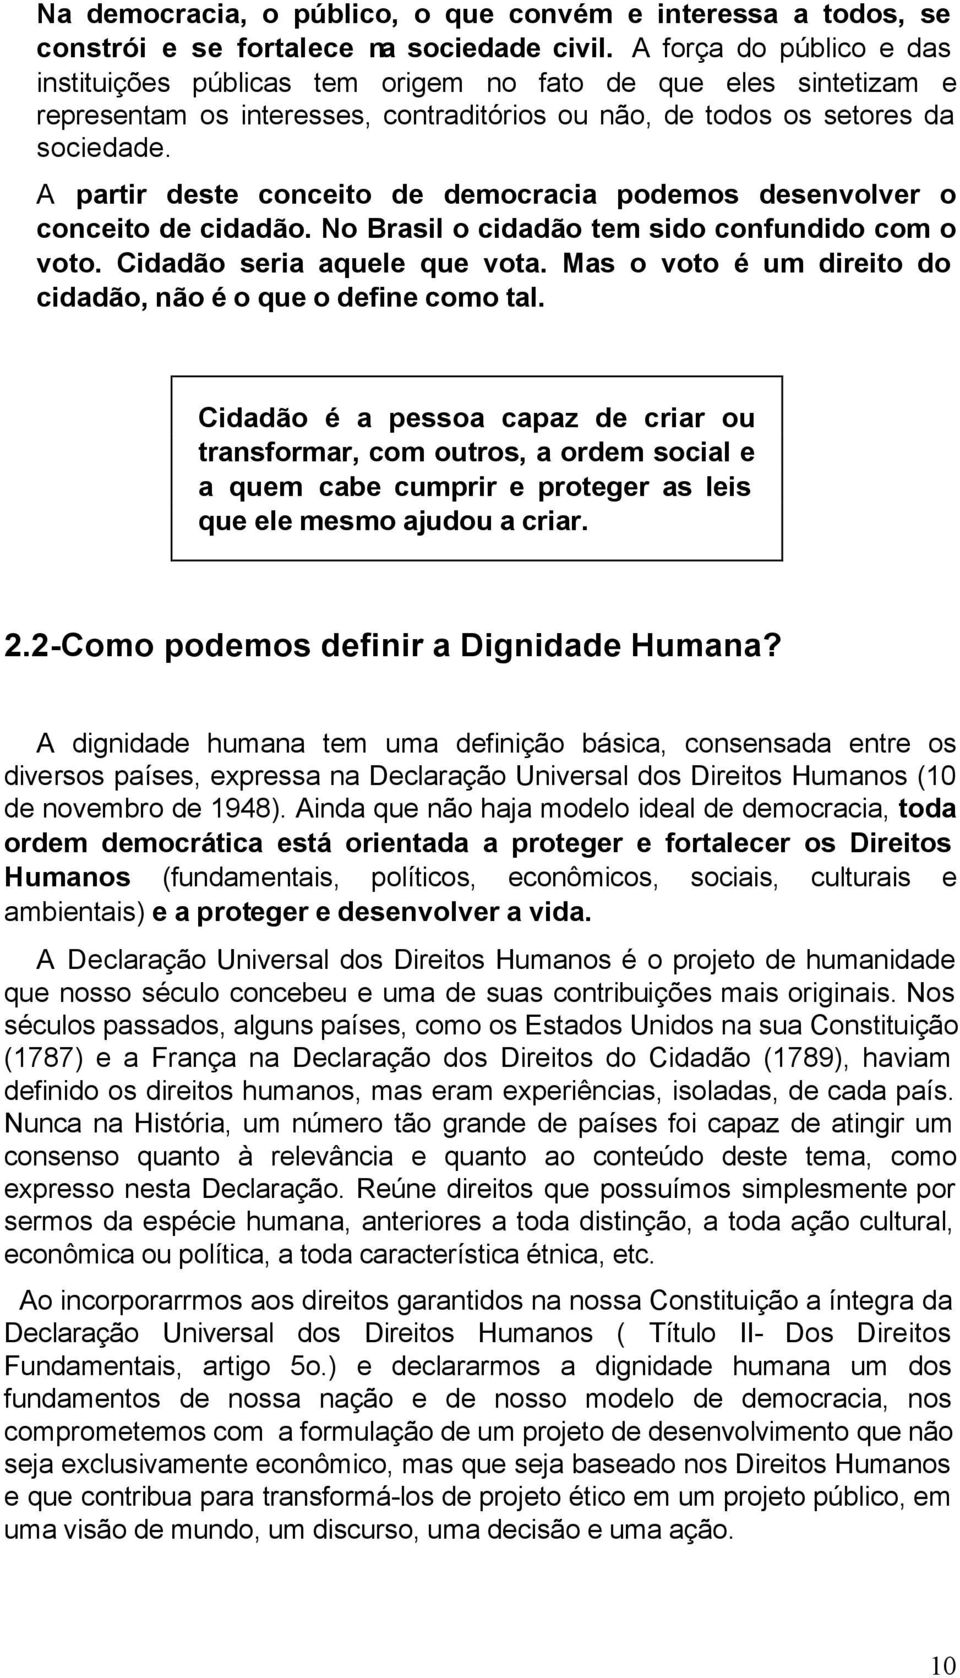 A partir deste conceito de democracia podemos desenvolver o conceito de cidadão. No Brasil o cidadão tem sido confundido com o voto. Cidadão seria aquele que vota.